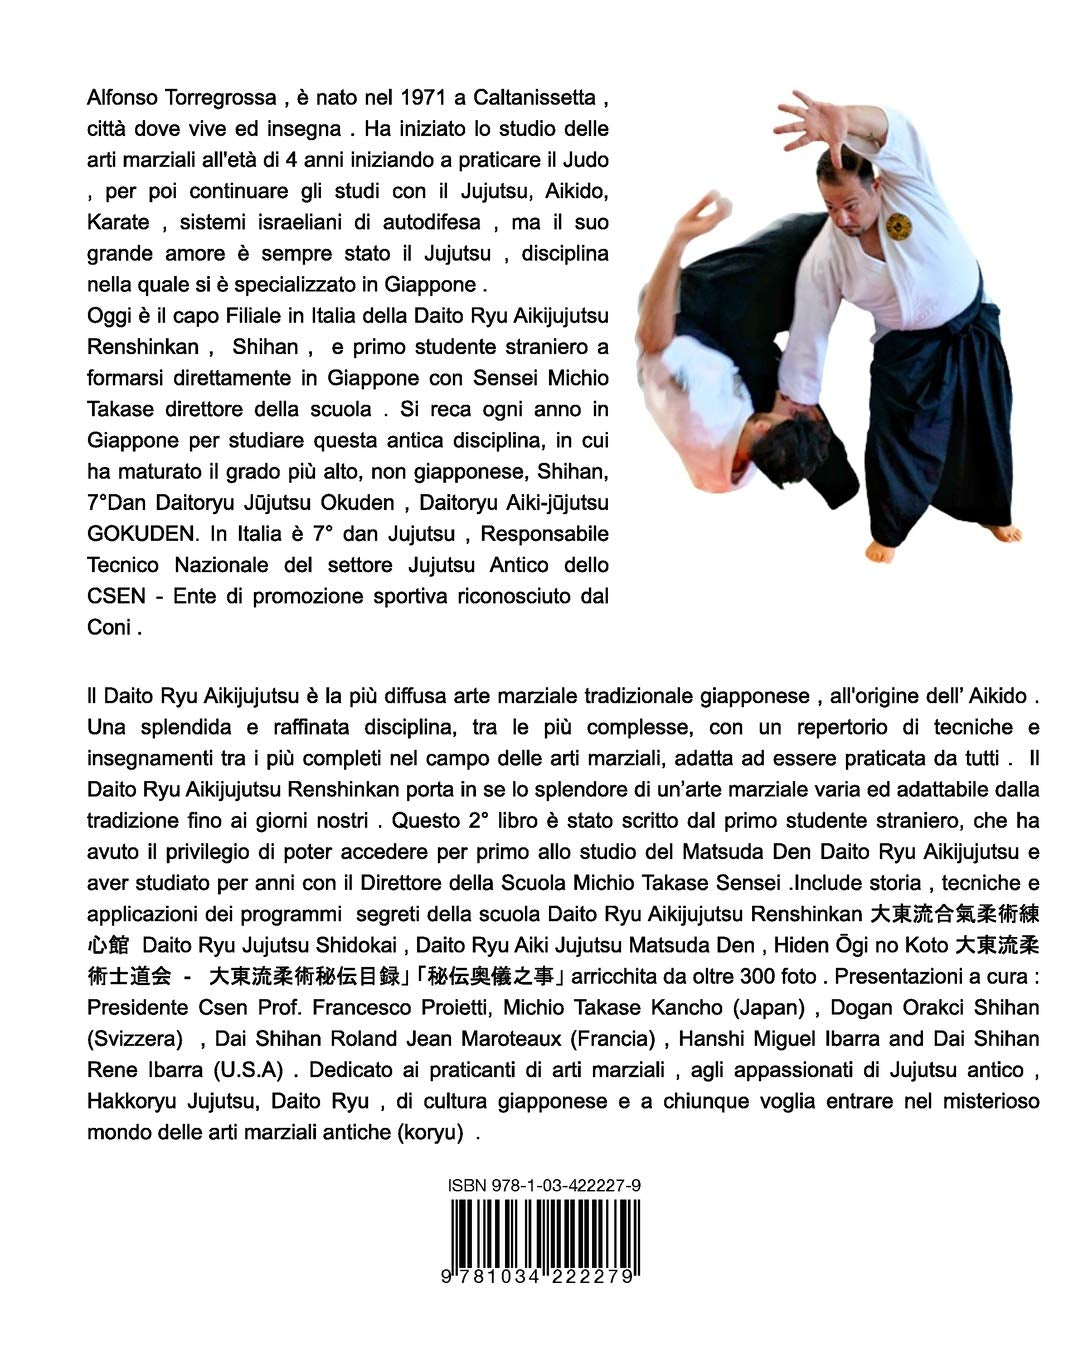 Daito Ryu Aikijujutsu Renshinkan Book 3 by Alfonso Torregrossa (Italian)